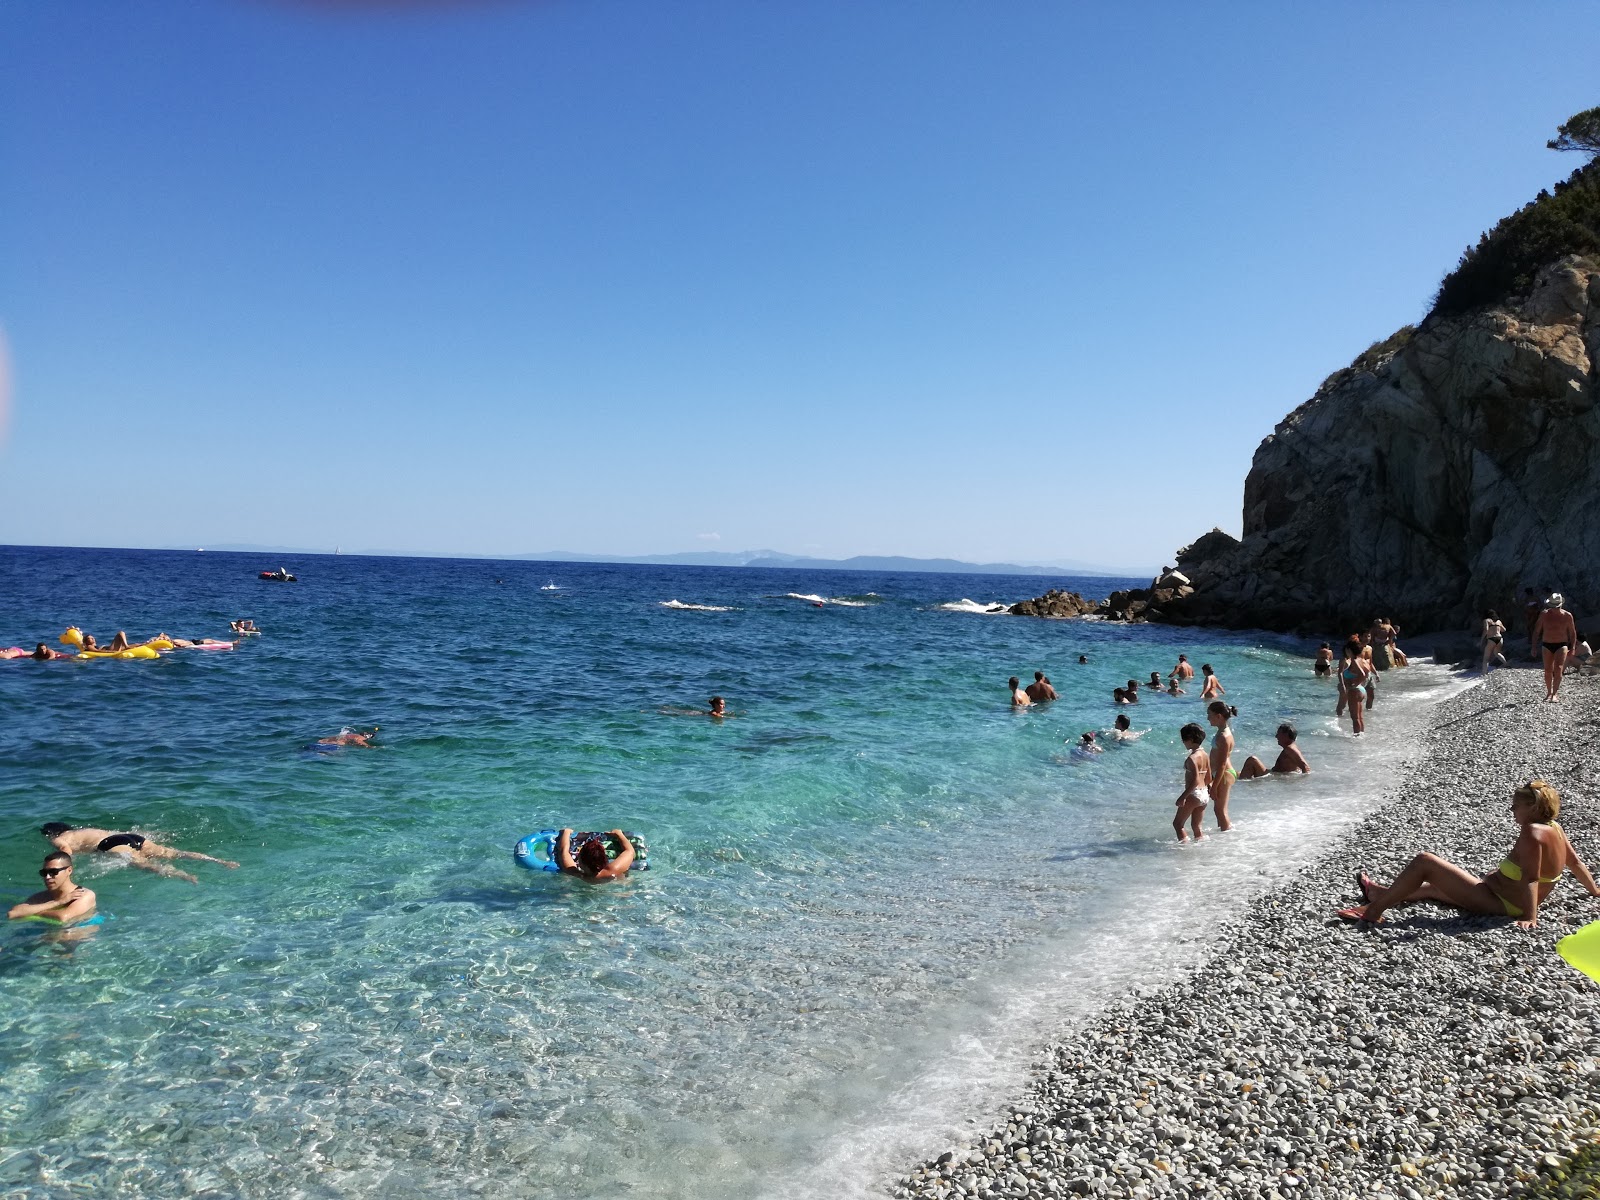 Spiaggia La Sorgente的照片 具有非常干净级别的清洁度